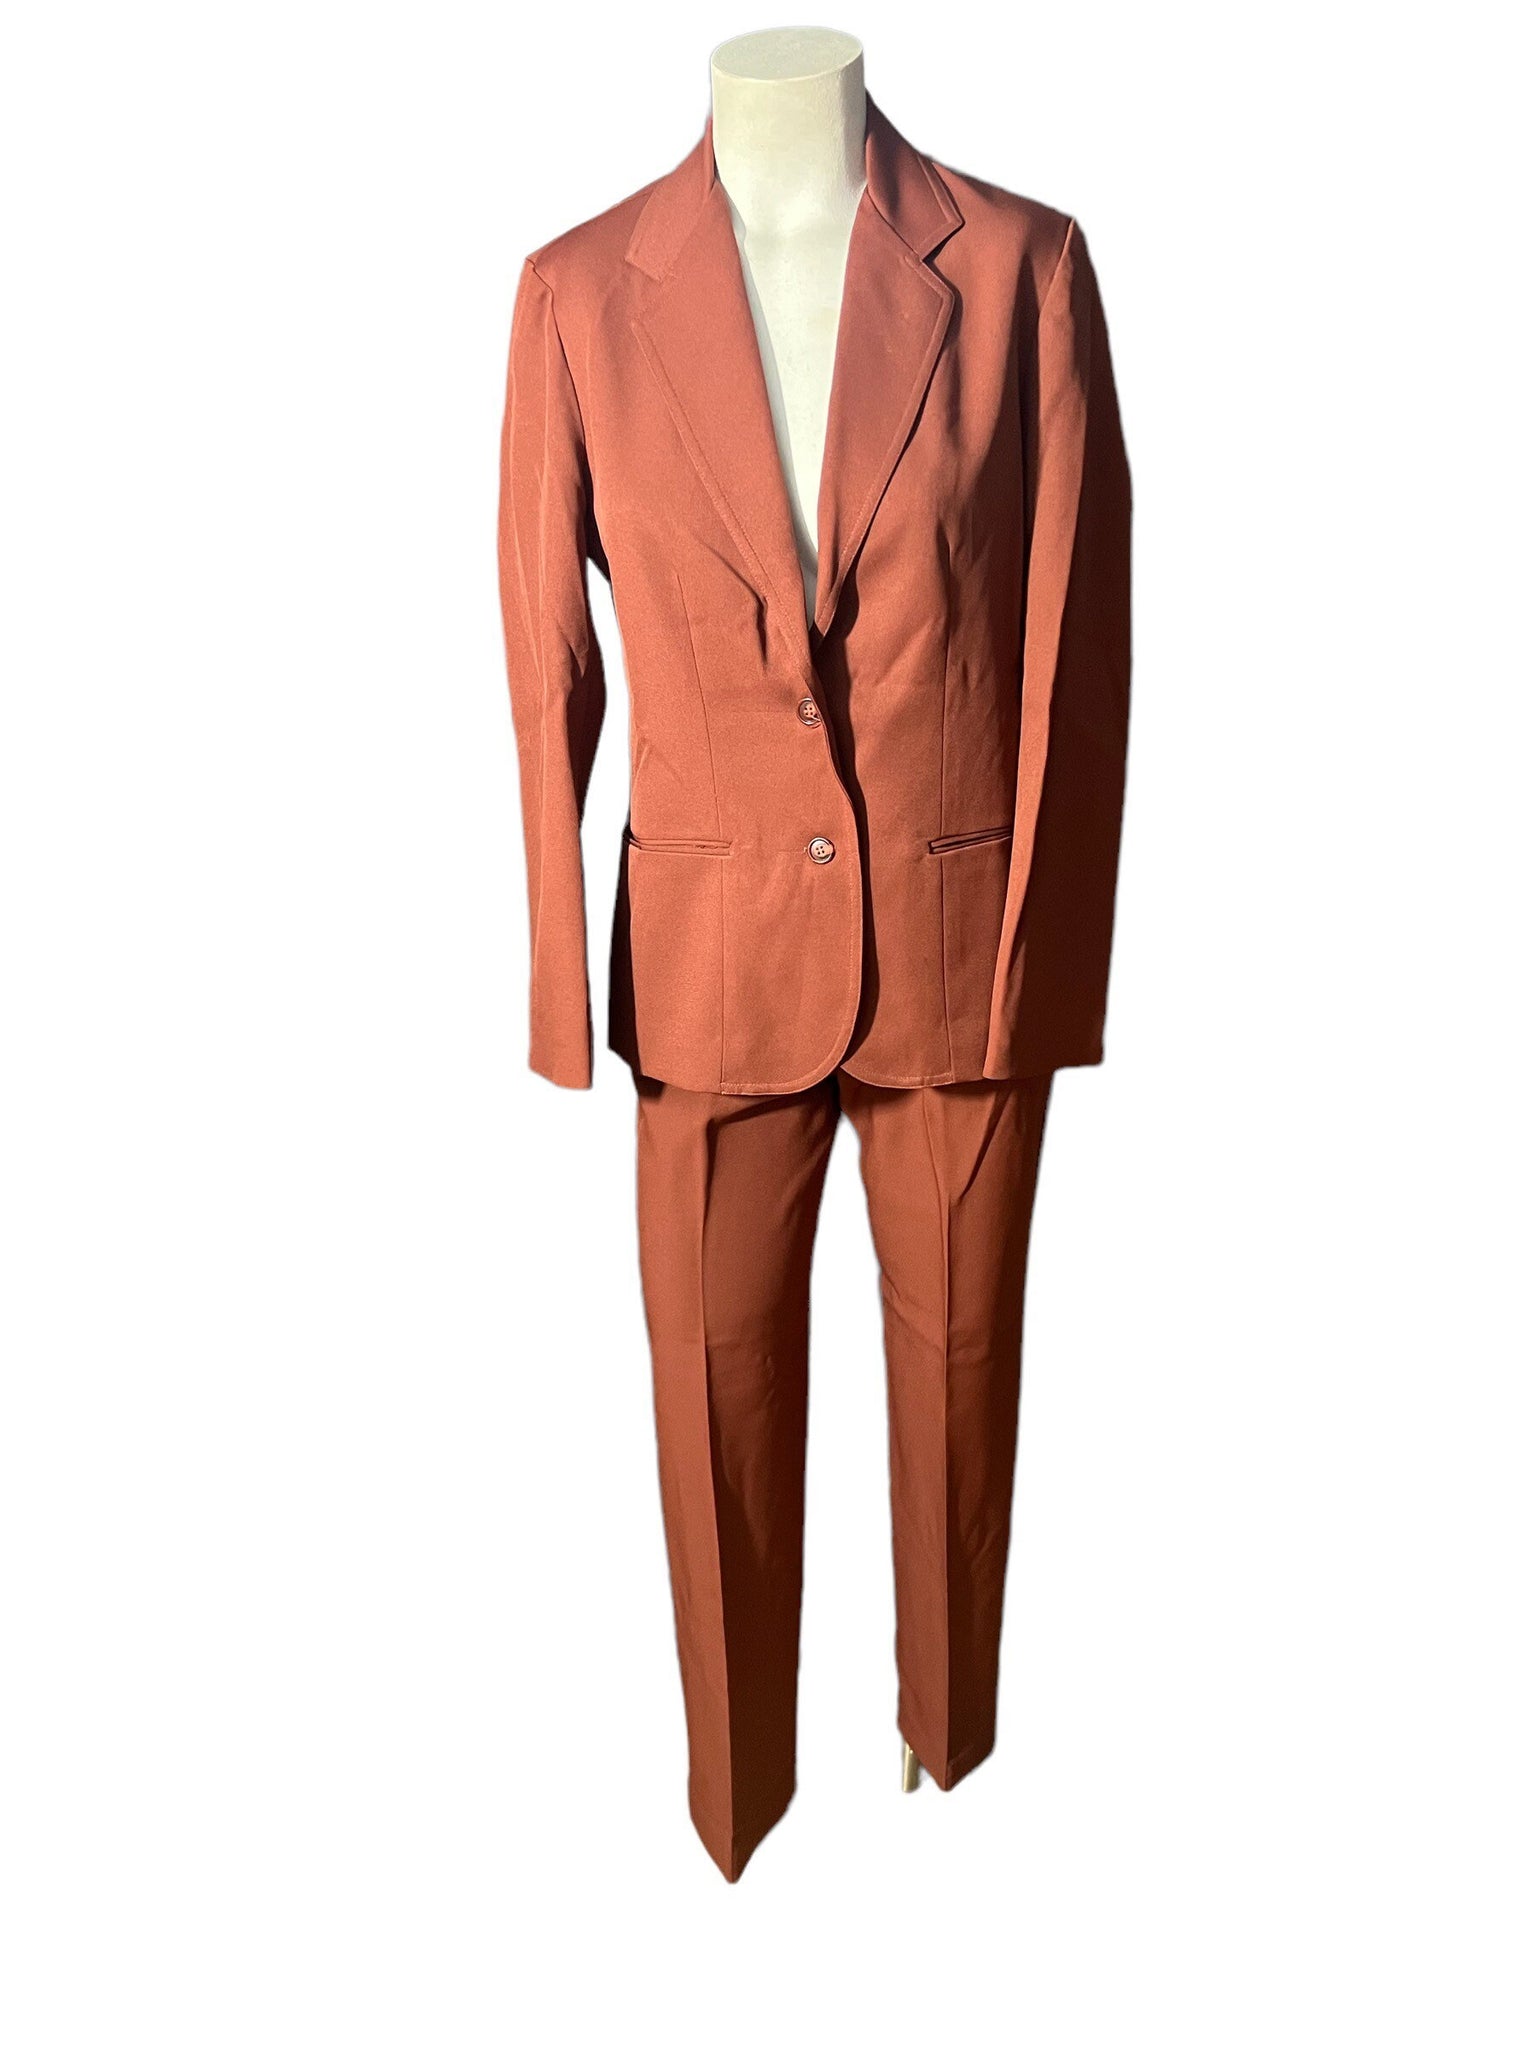 Vintage women's 70's suit 6 S M Ship n Shore